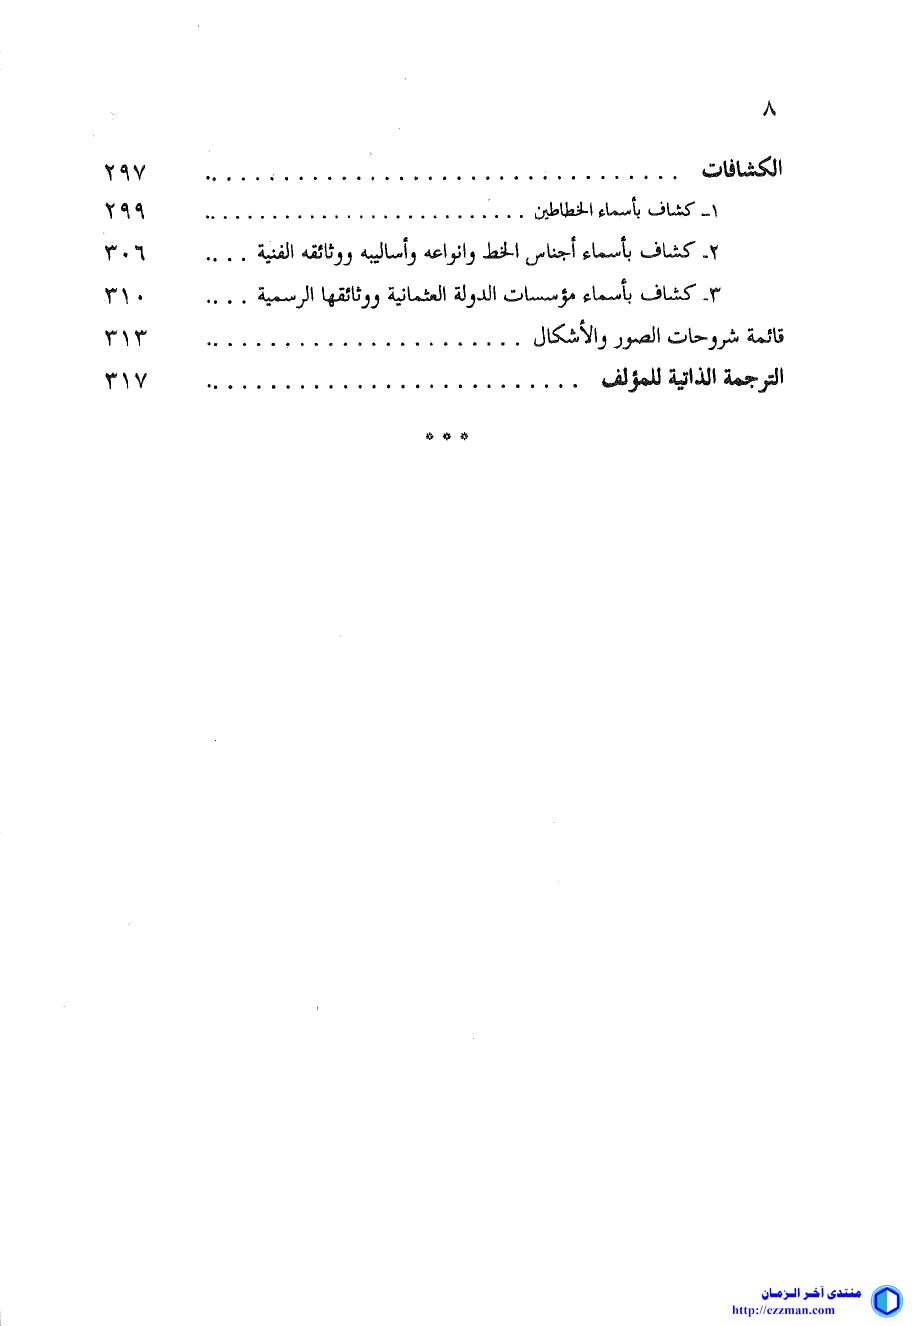 المدرسة العثمانية الخط العربي